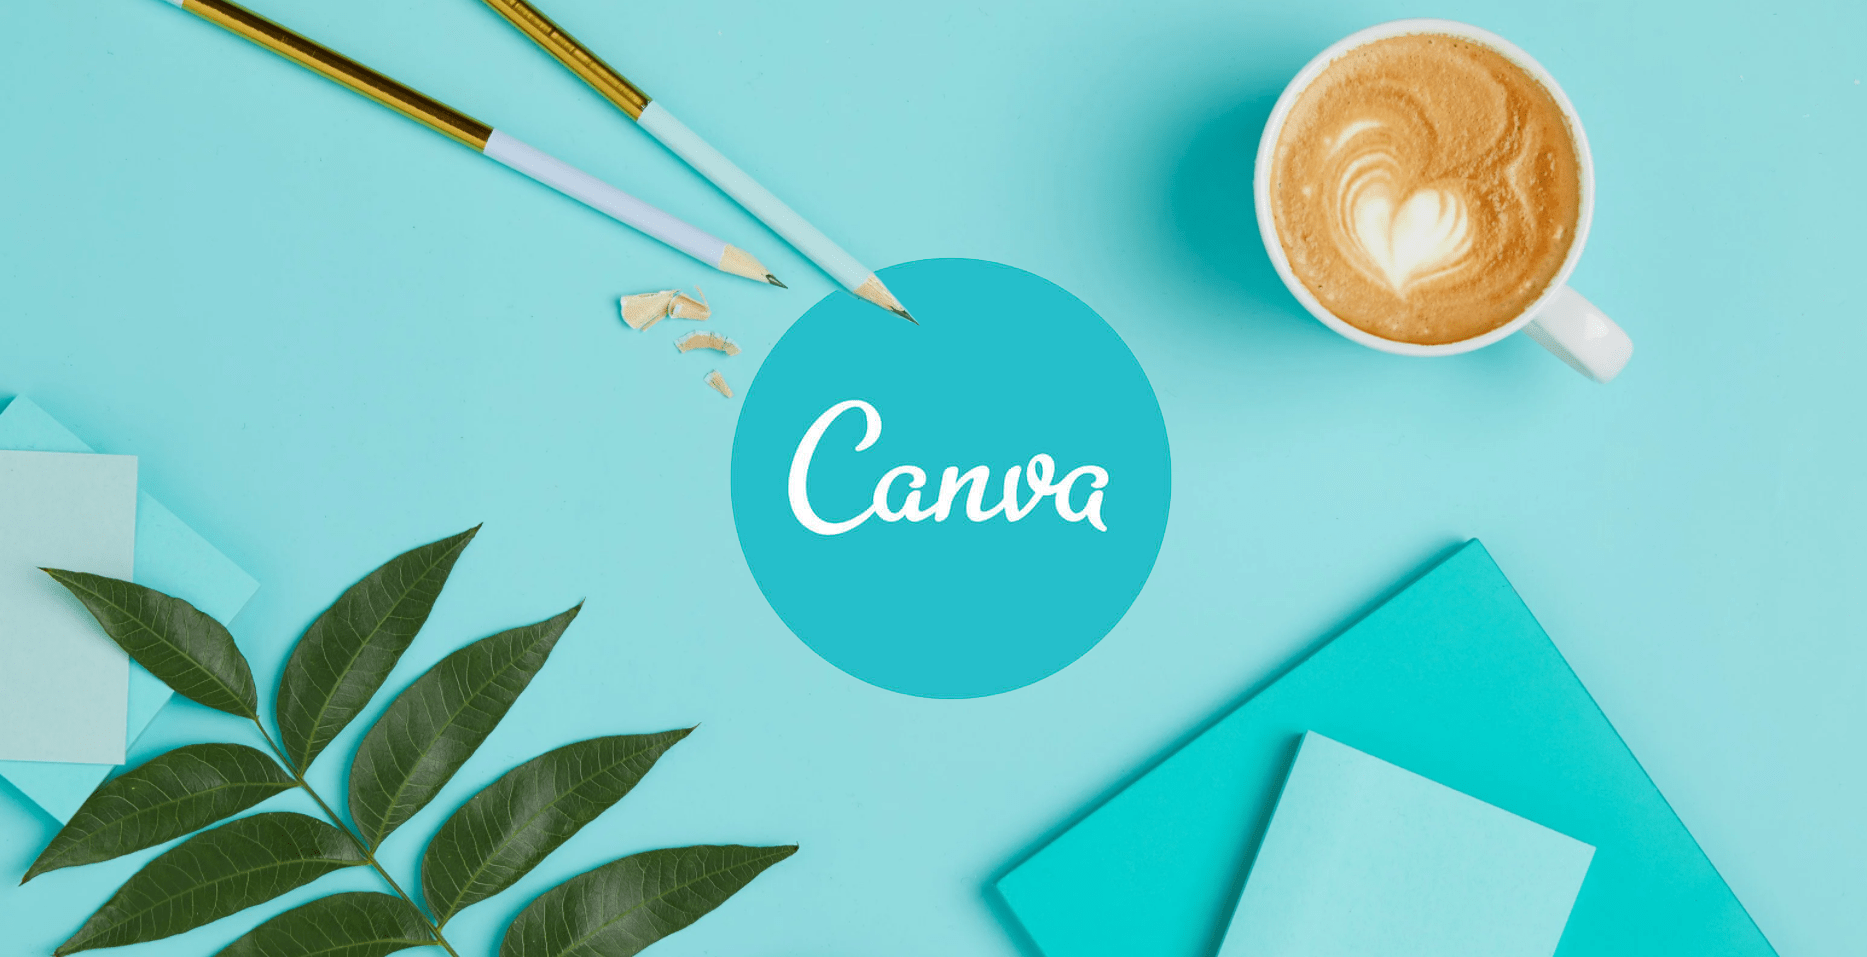 Canvaで写真を丸くする方法